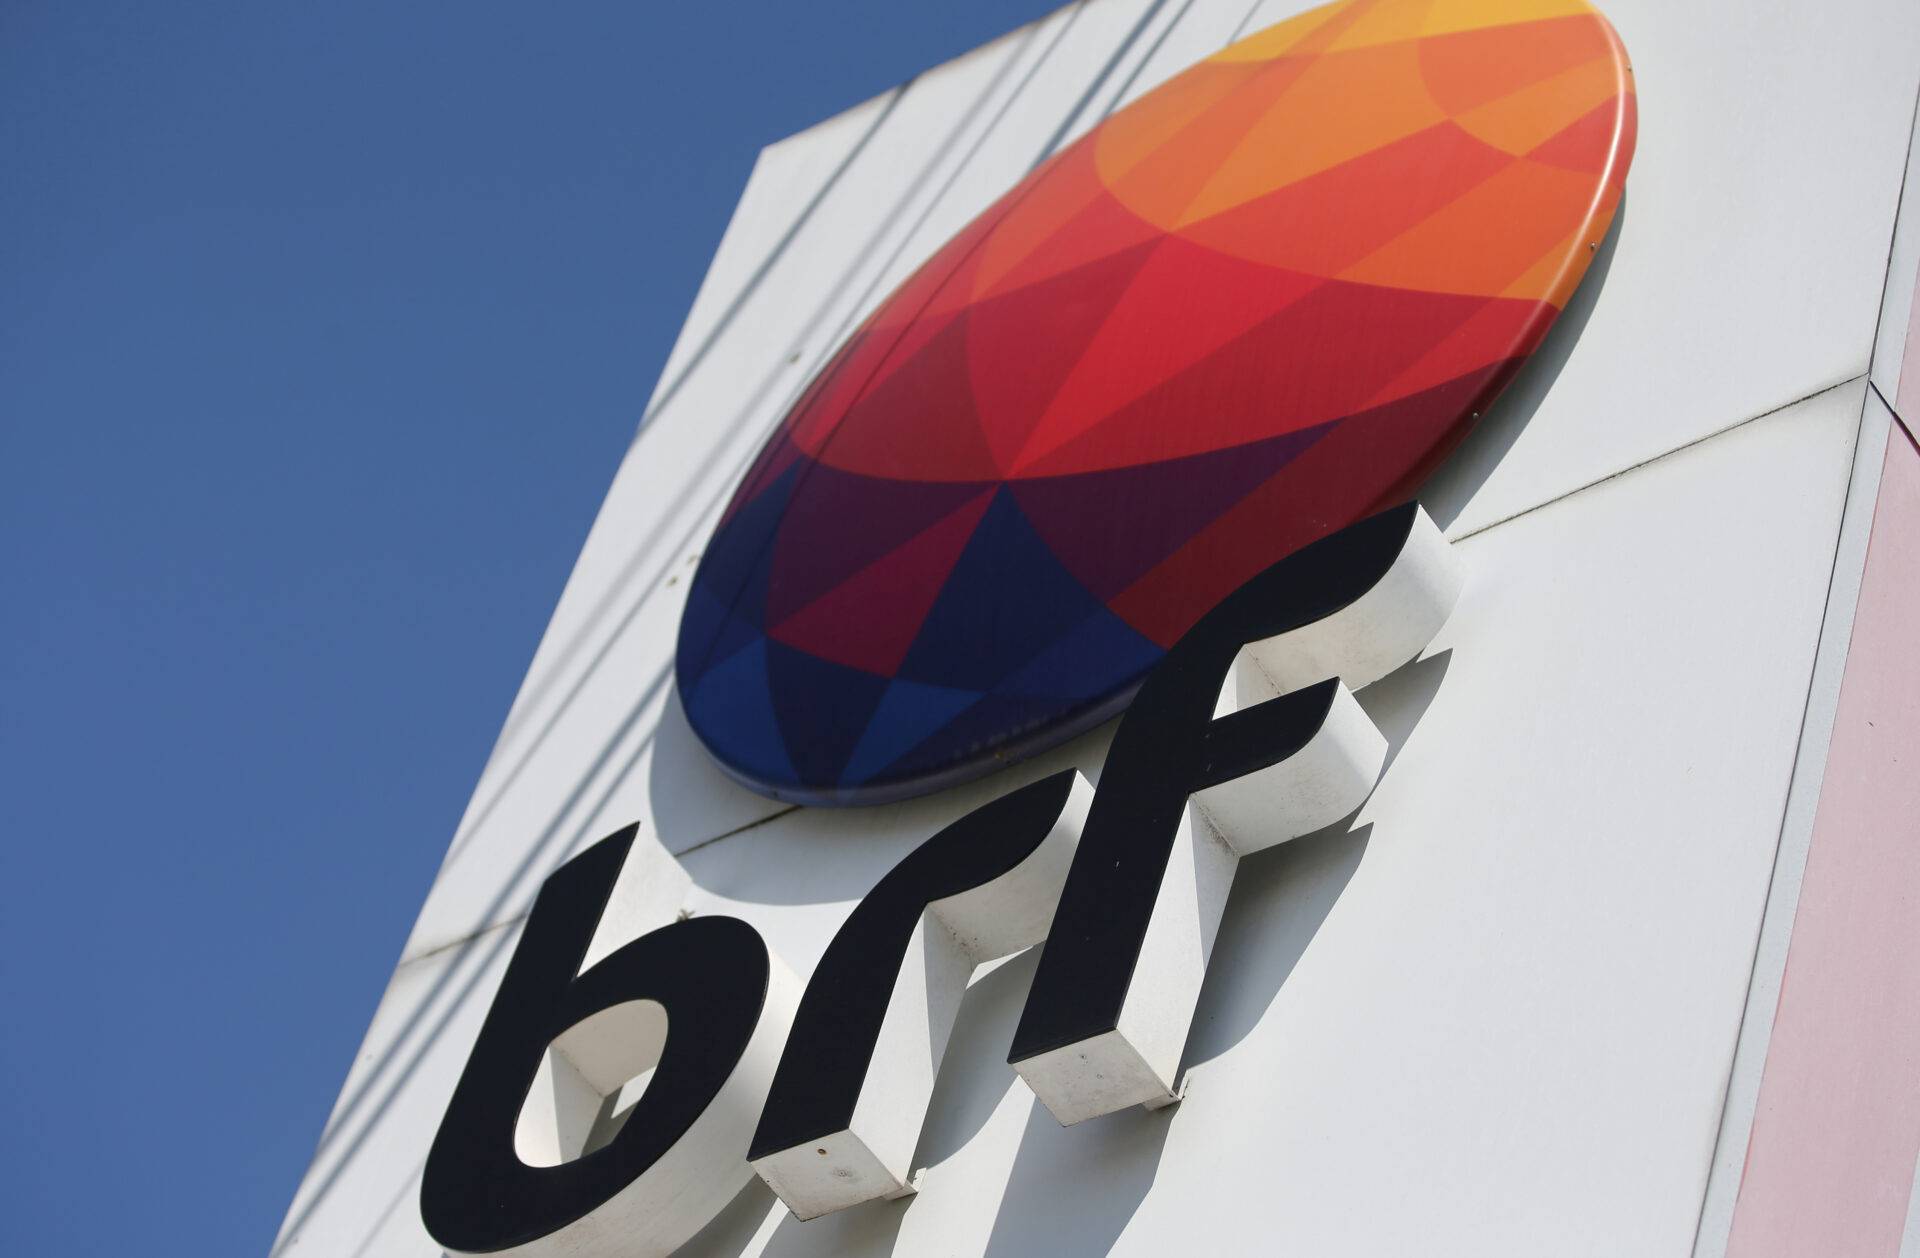 BRF Q1 Profit Surpasses Expectations